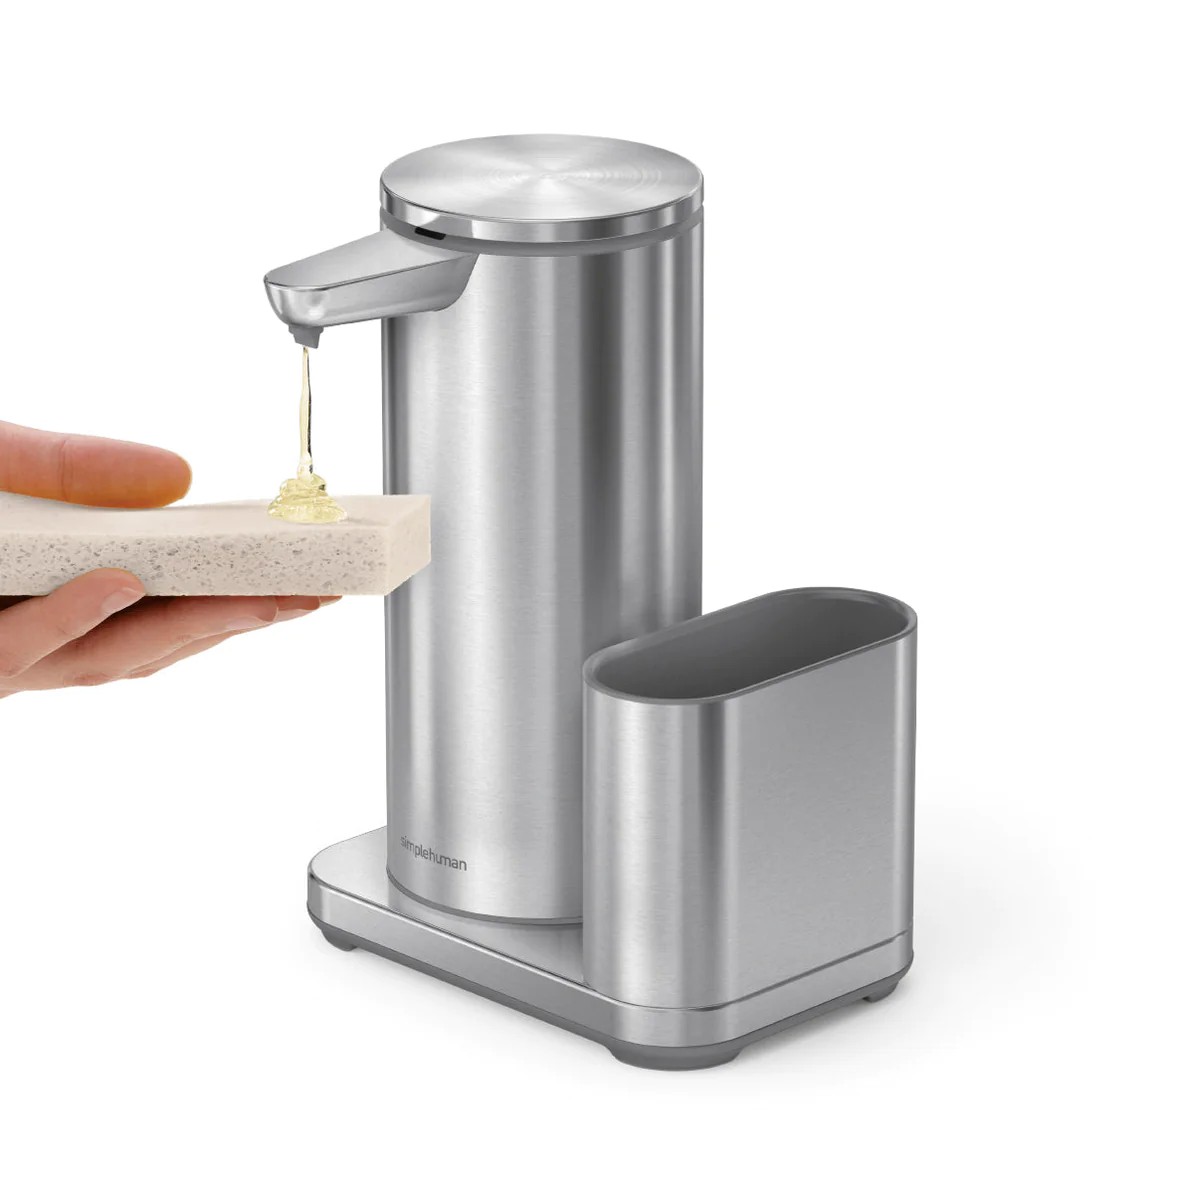 414ml Şarj Edilebilir · Sensörlü · Sıvı Sabunluk